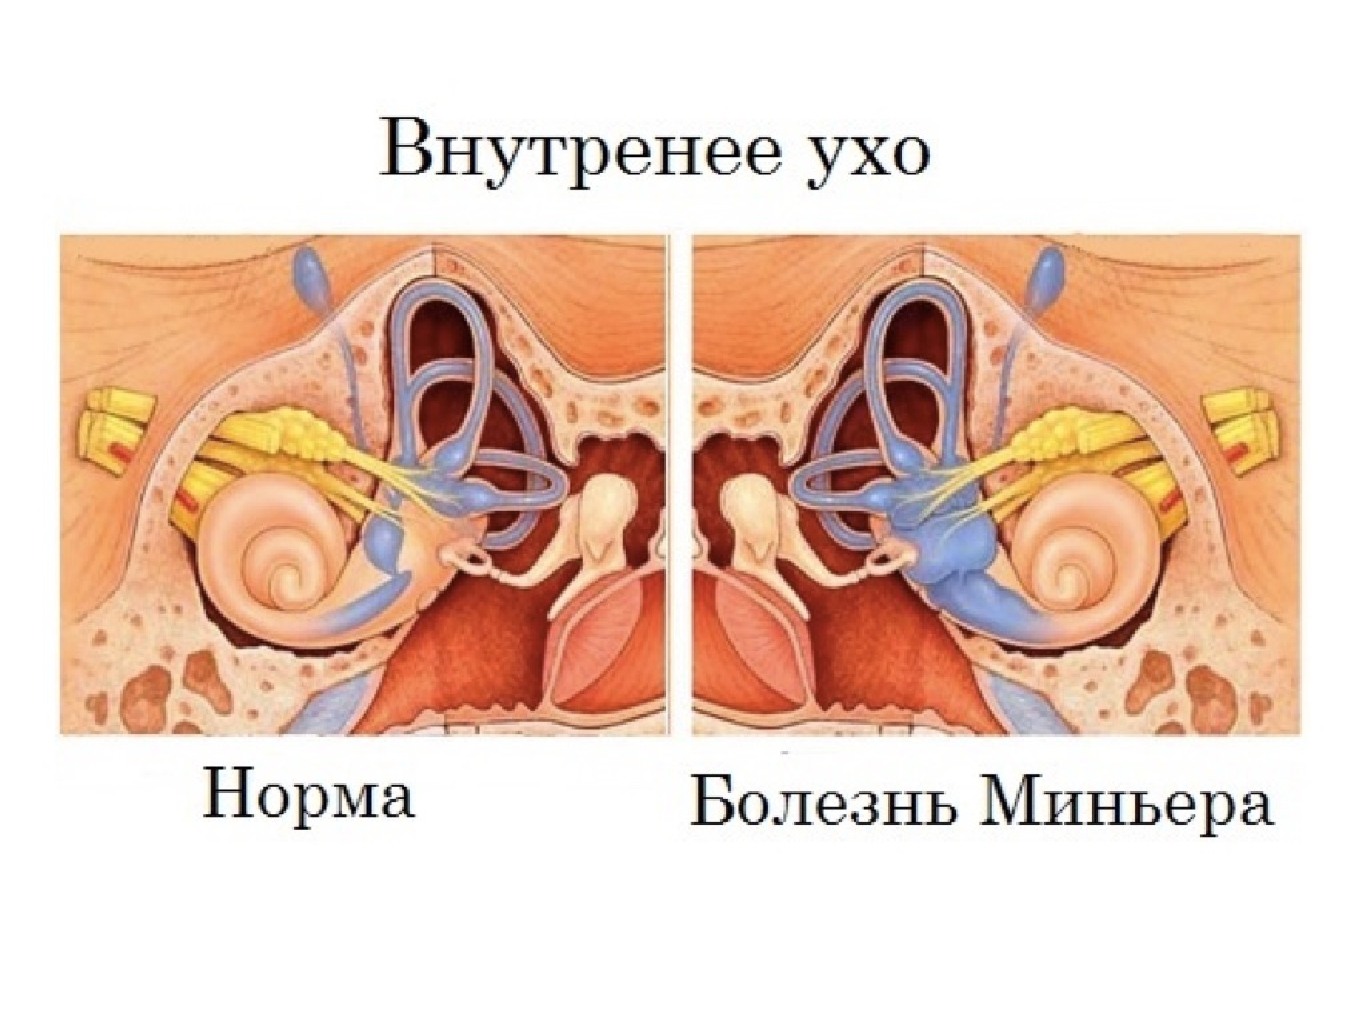 Болезнь внутреннего уха. Болезнь Меньера гидропс. Заболевания внутреннего уха. Внутреннее ухо заболевания. Заболевания органов слуха болезнь Меньера.